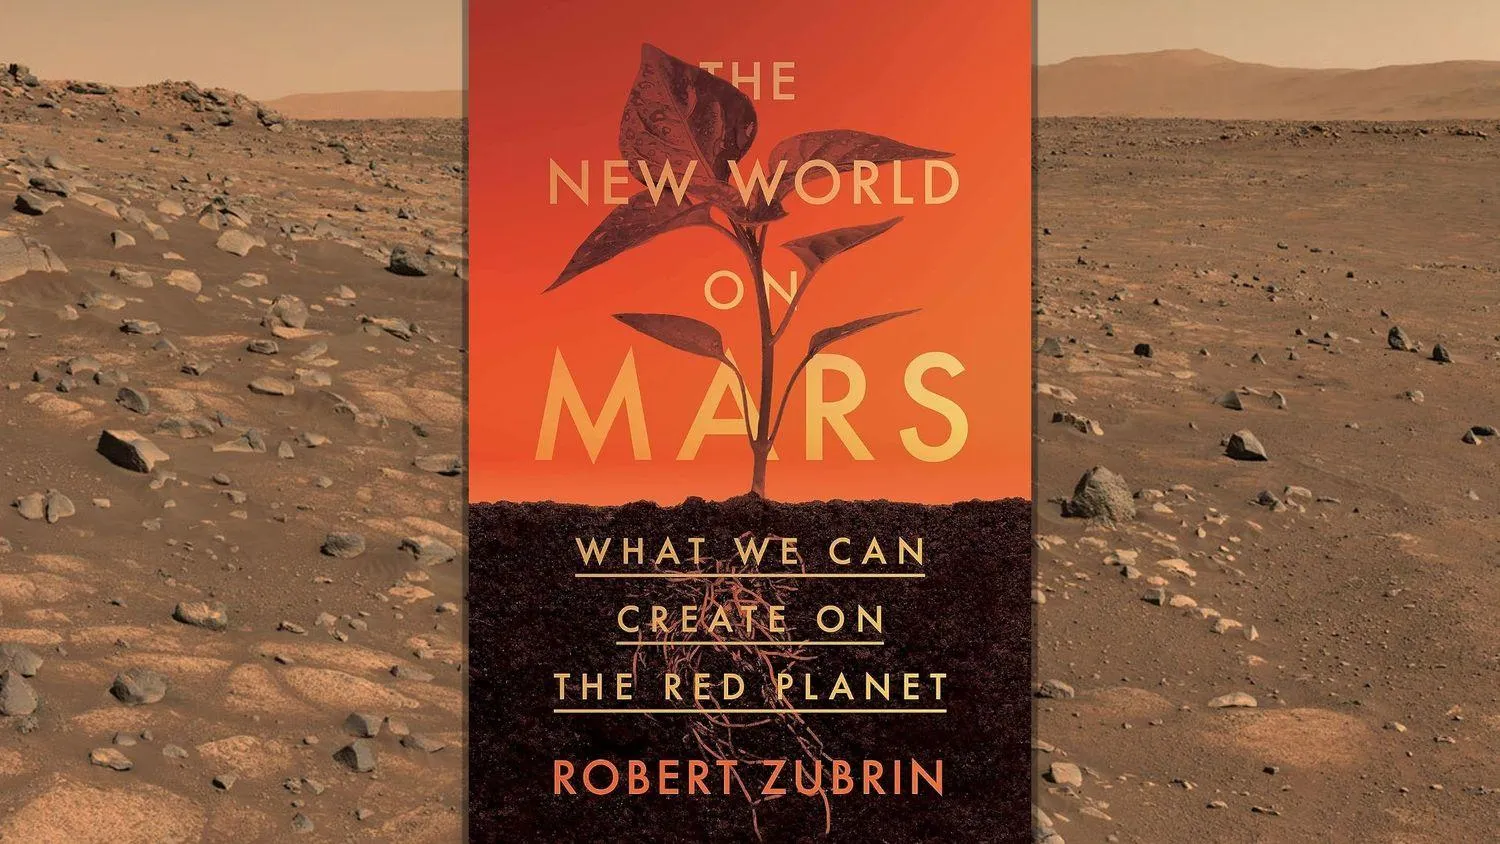 ein Buchcover, das einen Planeten zeigt, der in rötlicher Erde hinter dem Text the new world on mars wächst